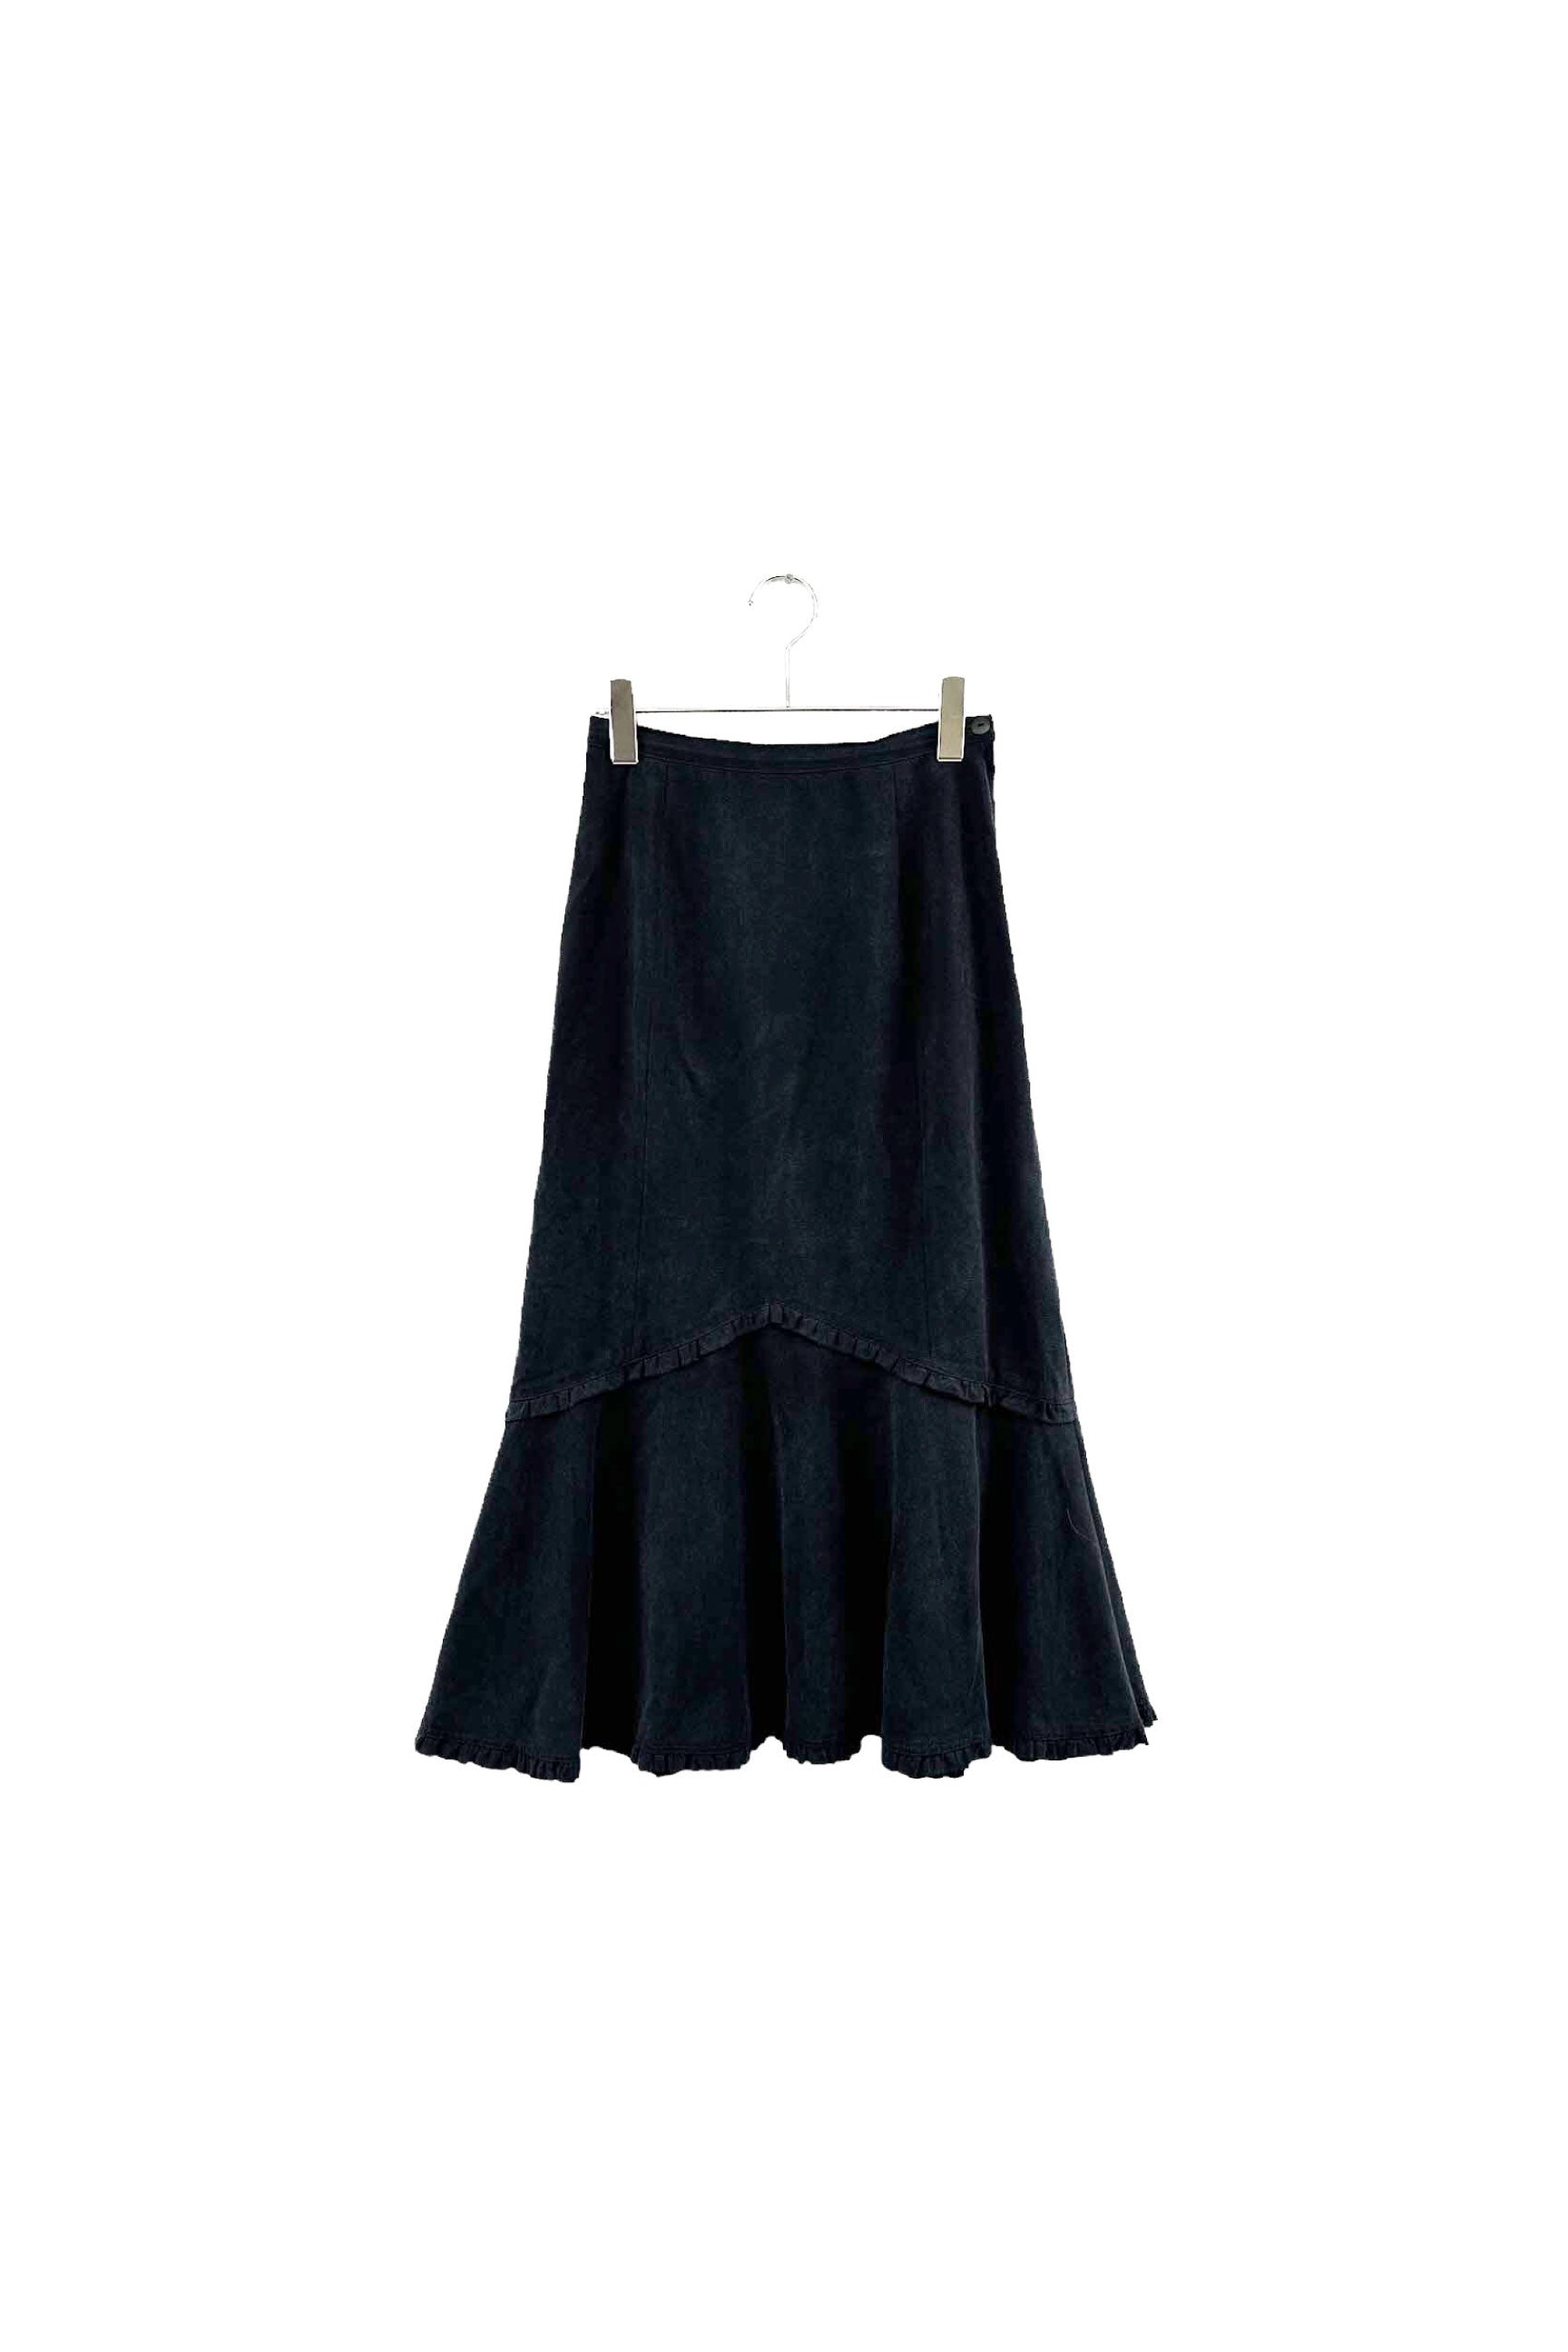 INGEBORG インゲボルグ ロングスカート スカート Skirt Long Skirt 